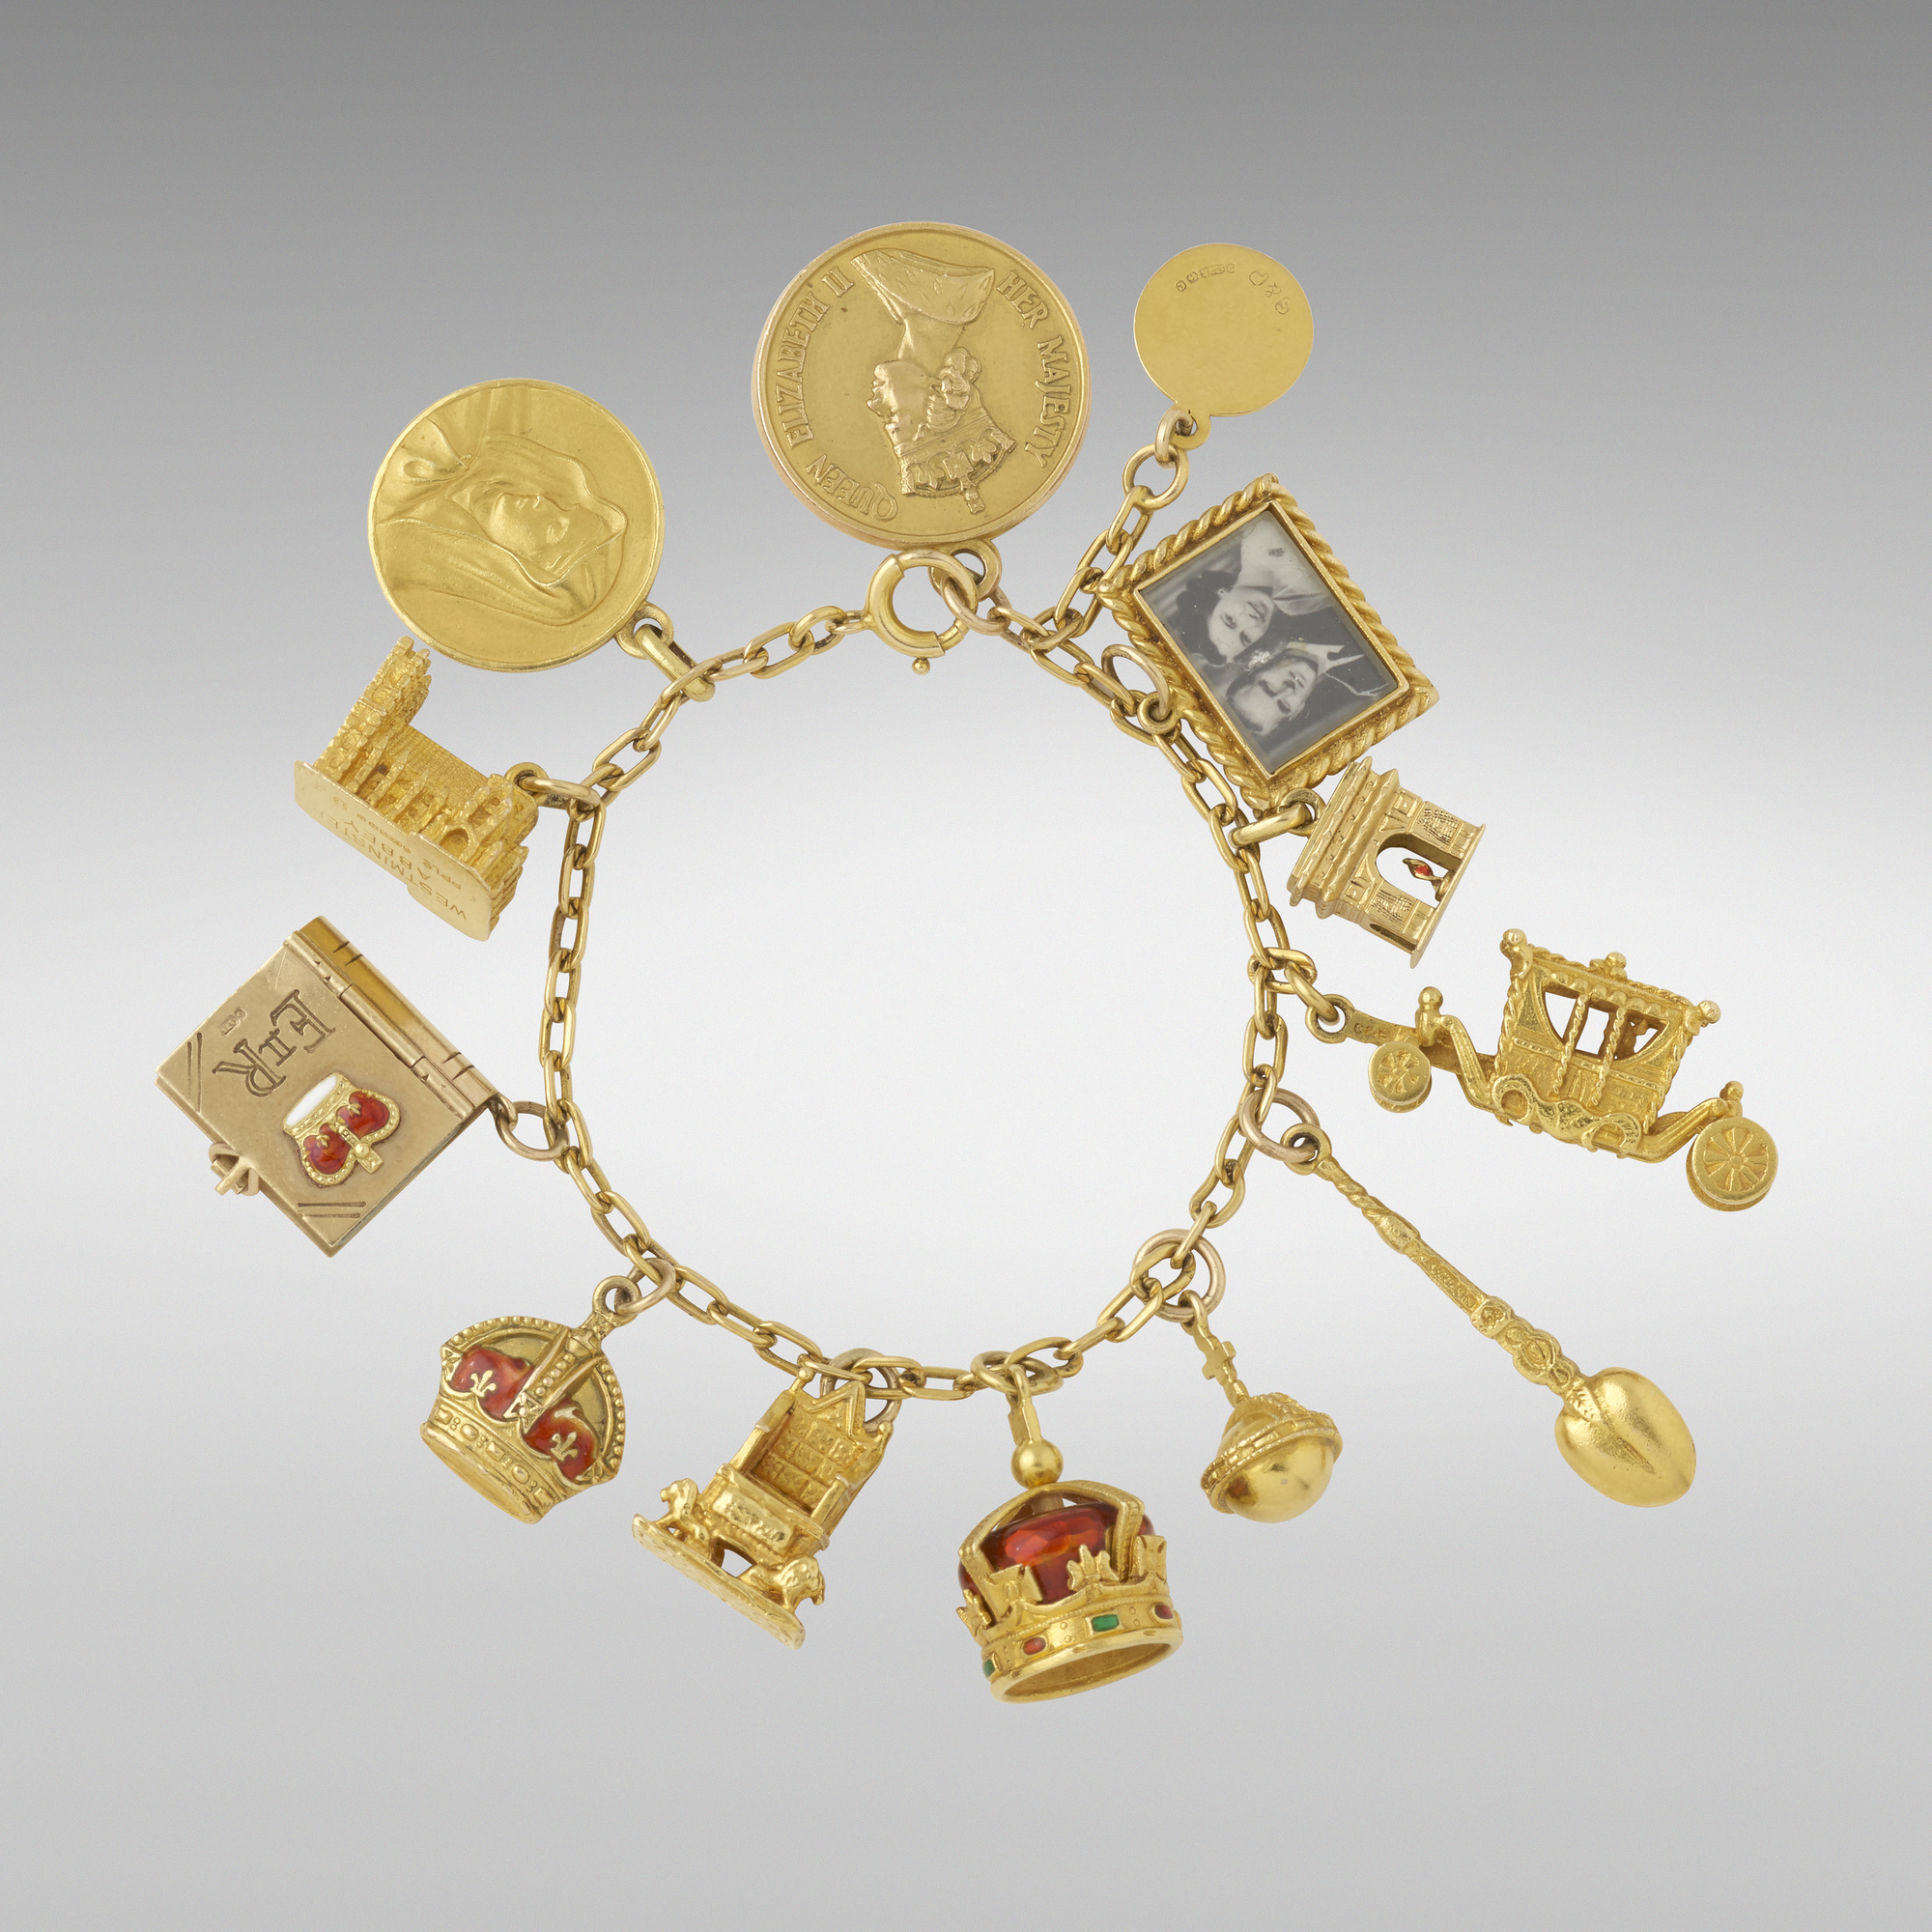 Gold coronation charm bracelet from 1952, est. $1,500-$2,000. Image courtesy of Rago/Wright/LAMA